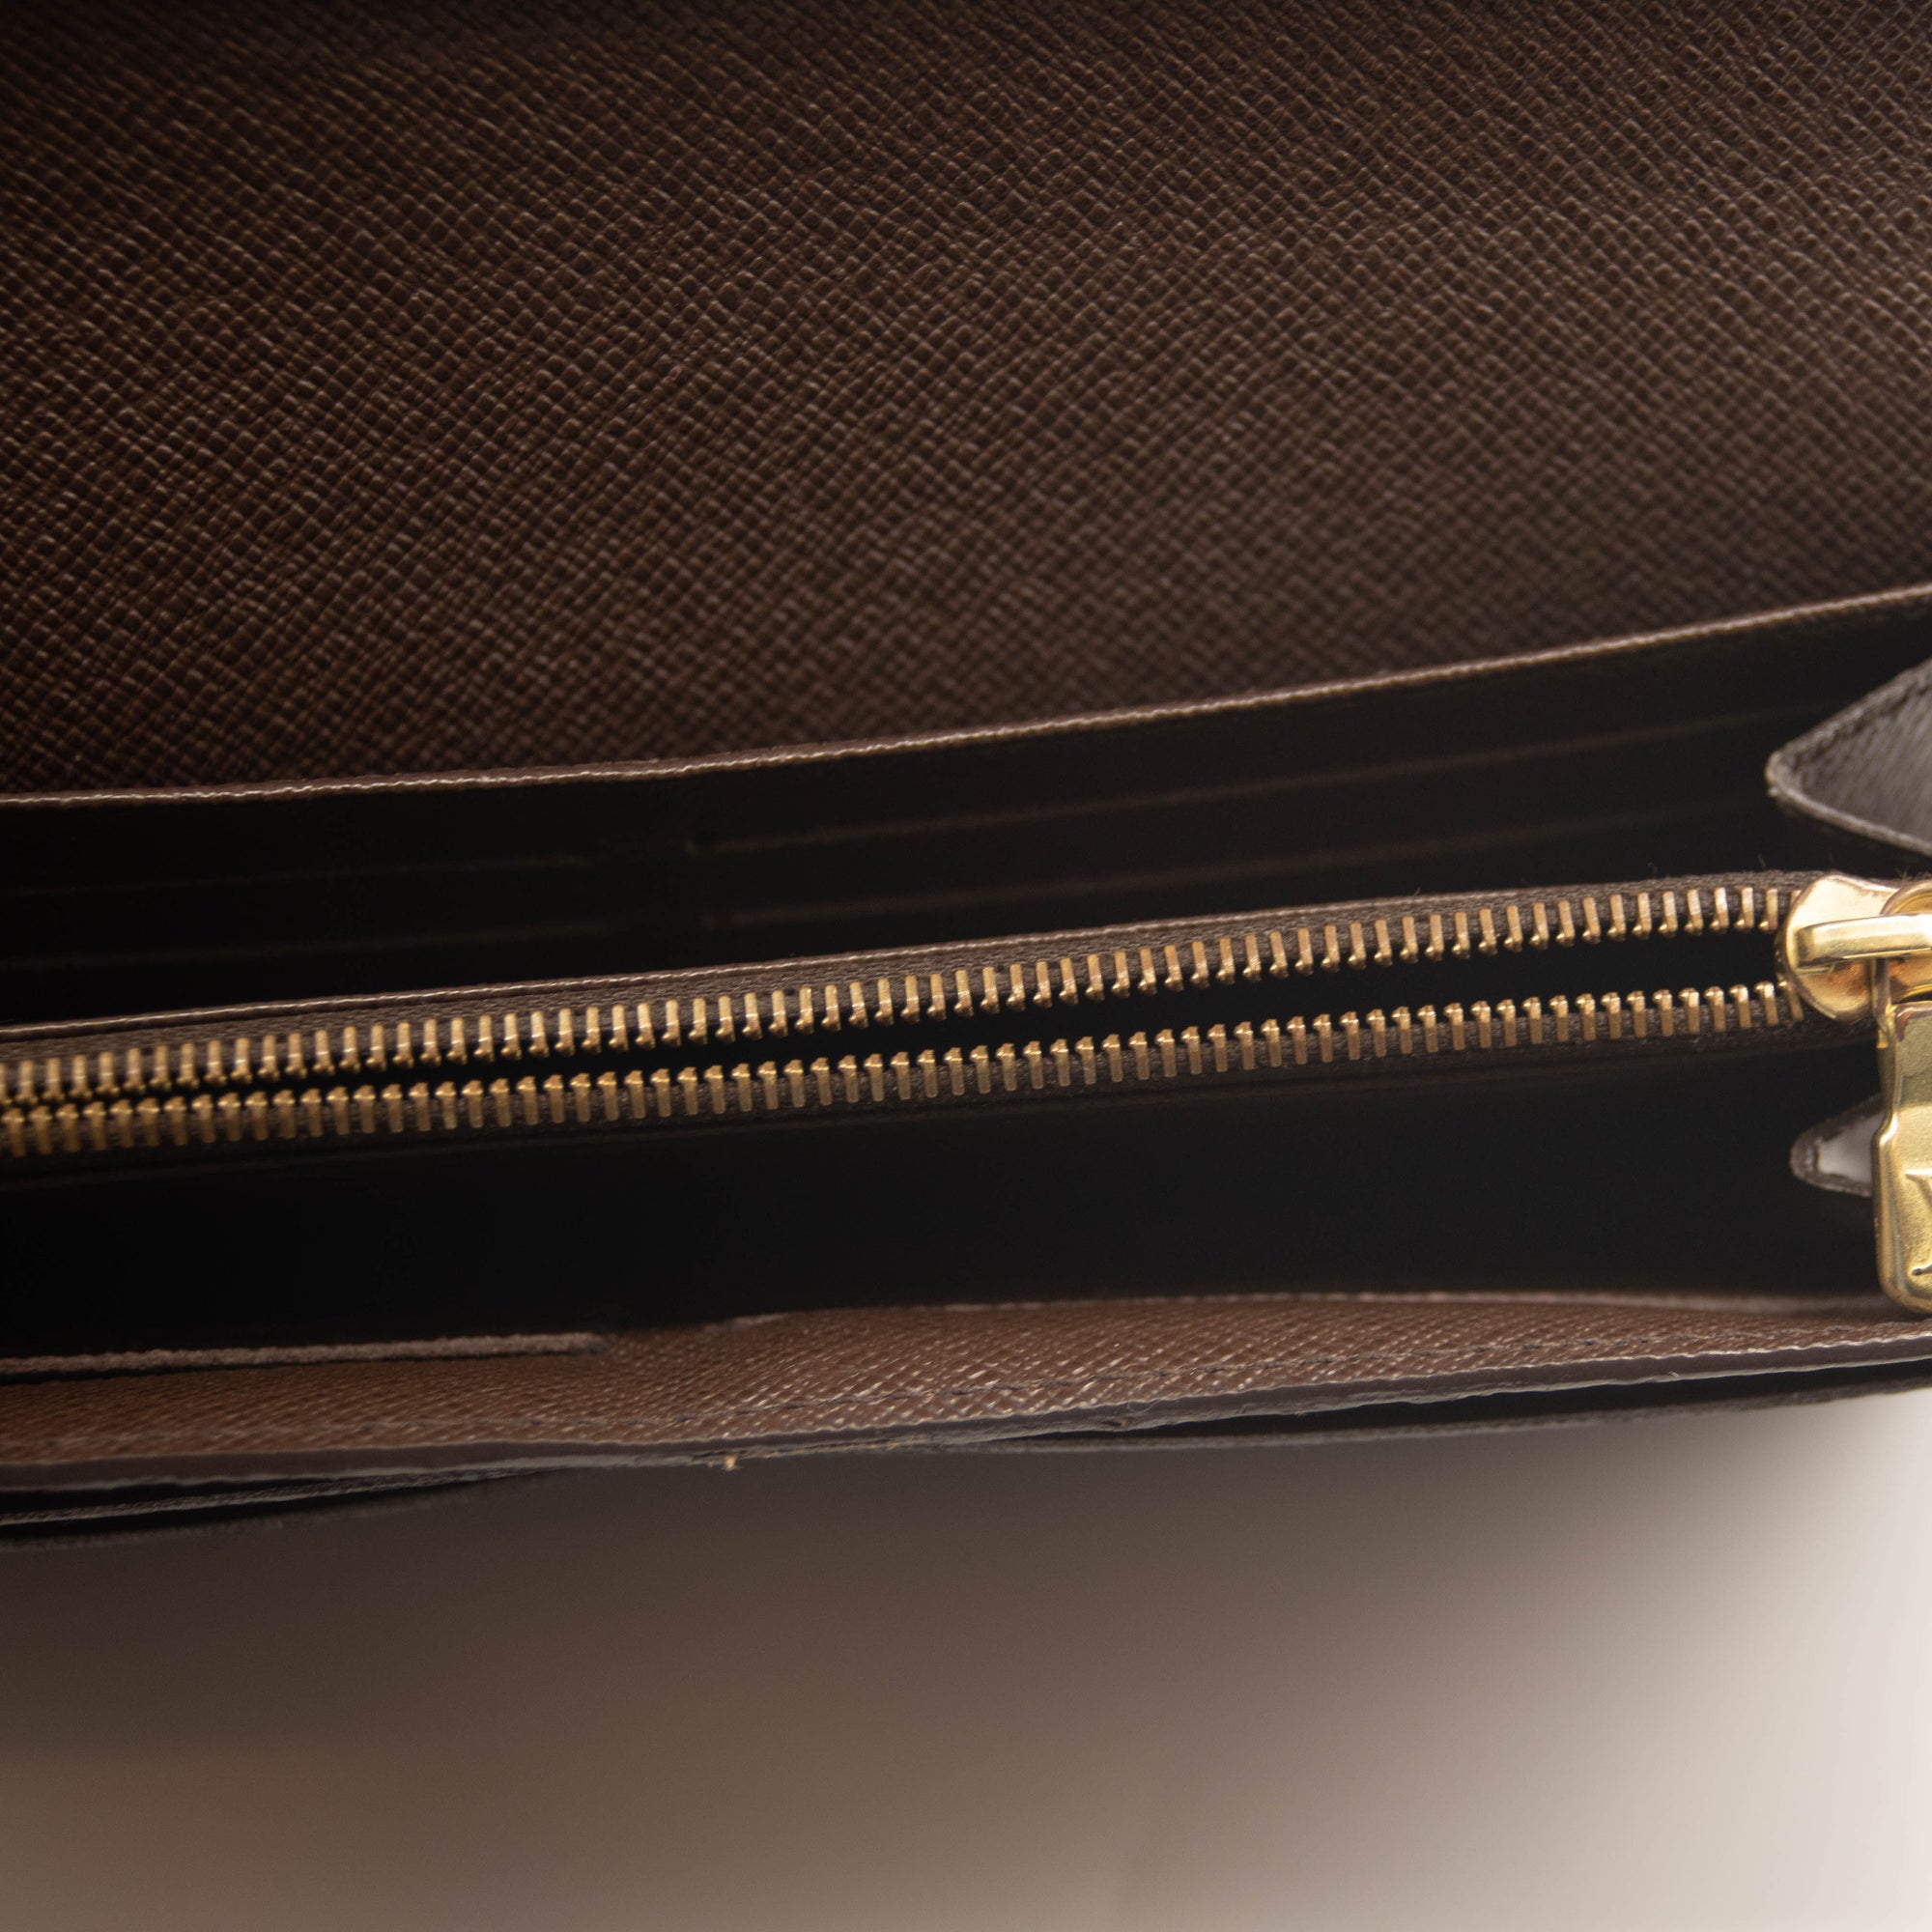 Louis Vuitton Wallet — California Loan & Jewelry